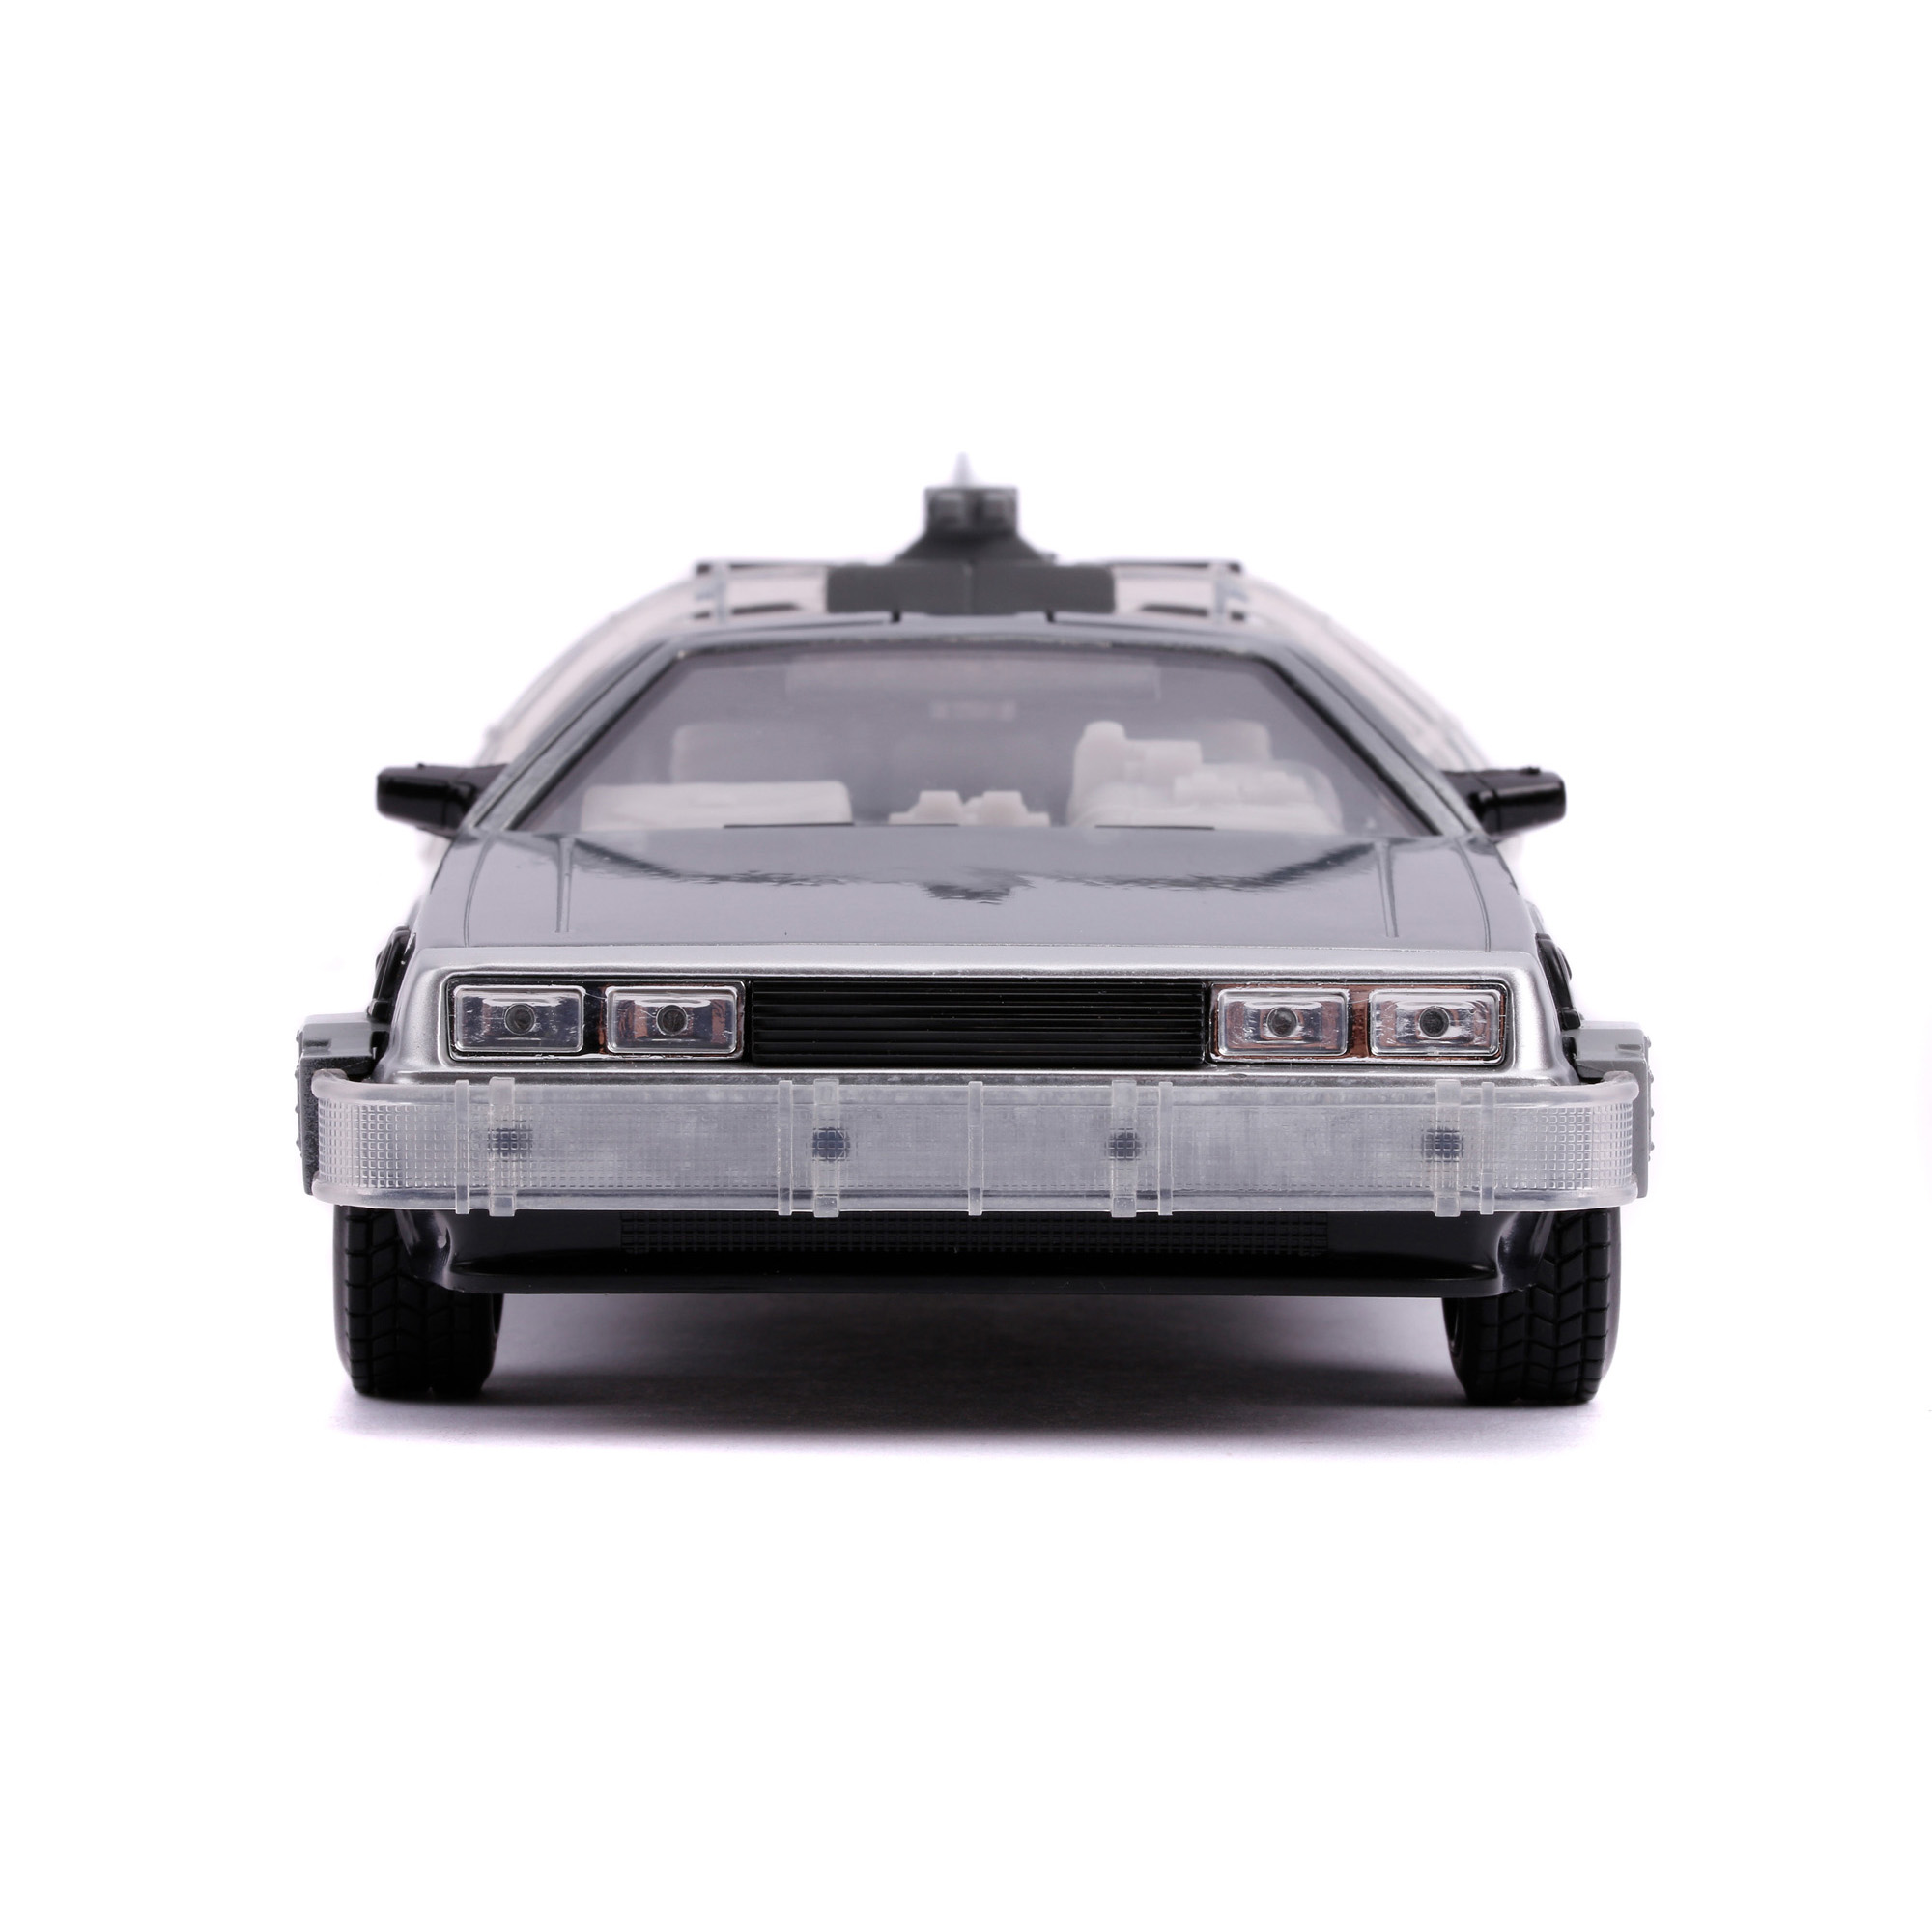 DeLorean (Ritorno al Futuro 2) Time Machine scala 1:24 - Jada